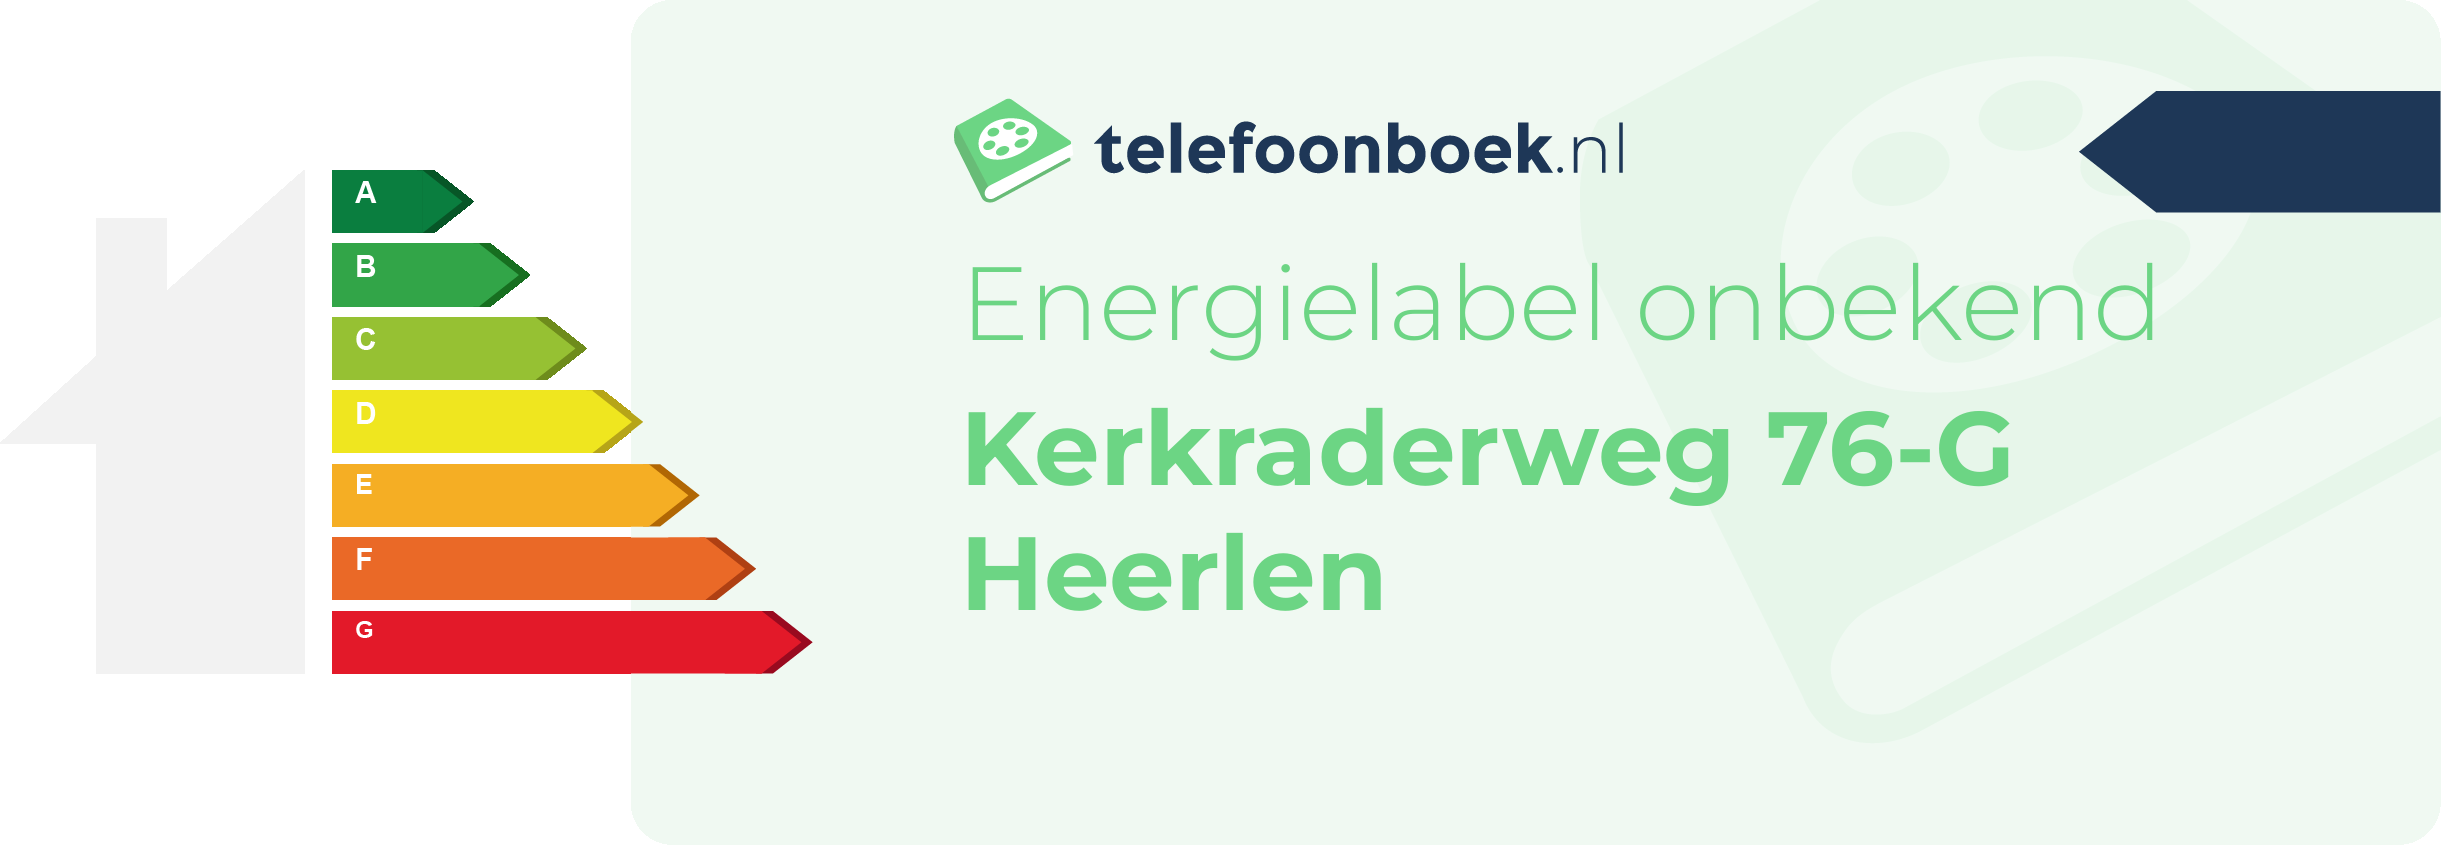 Energielabel Kerkraderweg 76-G Heerlen